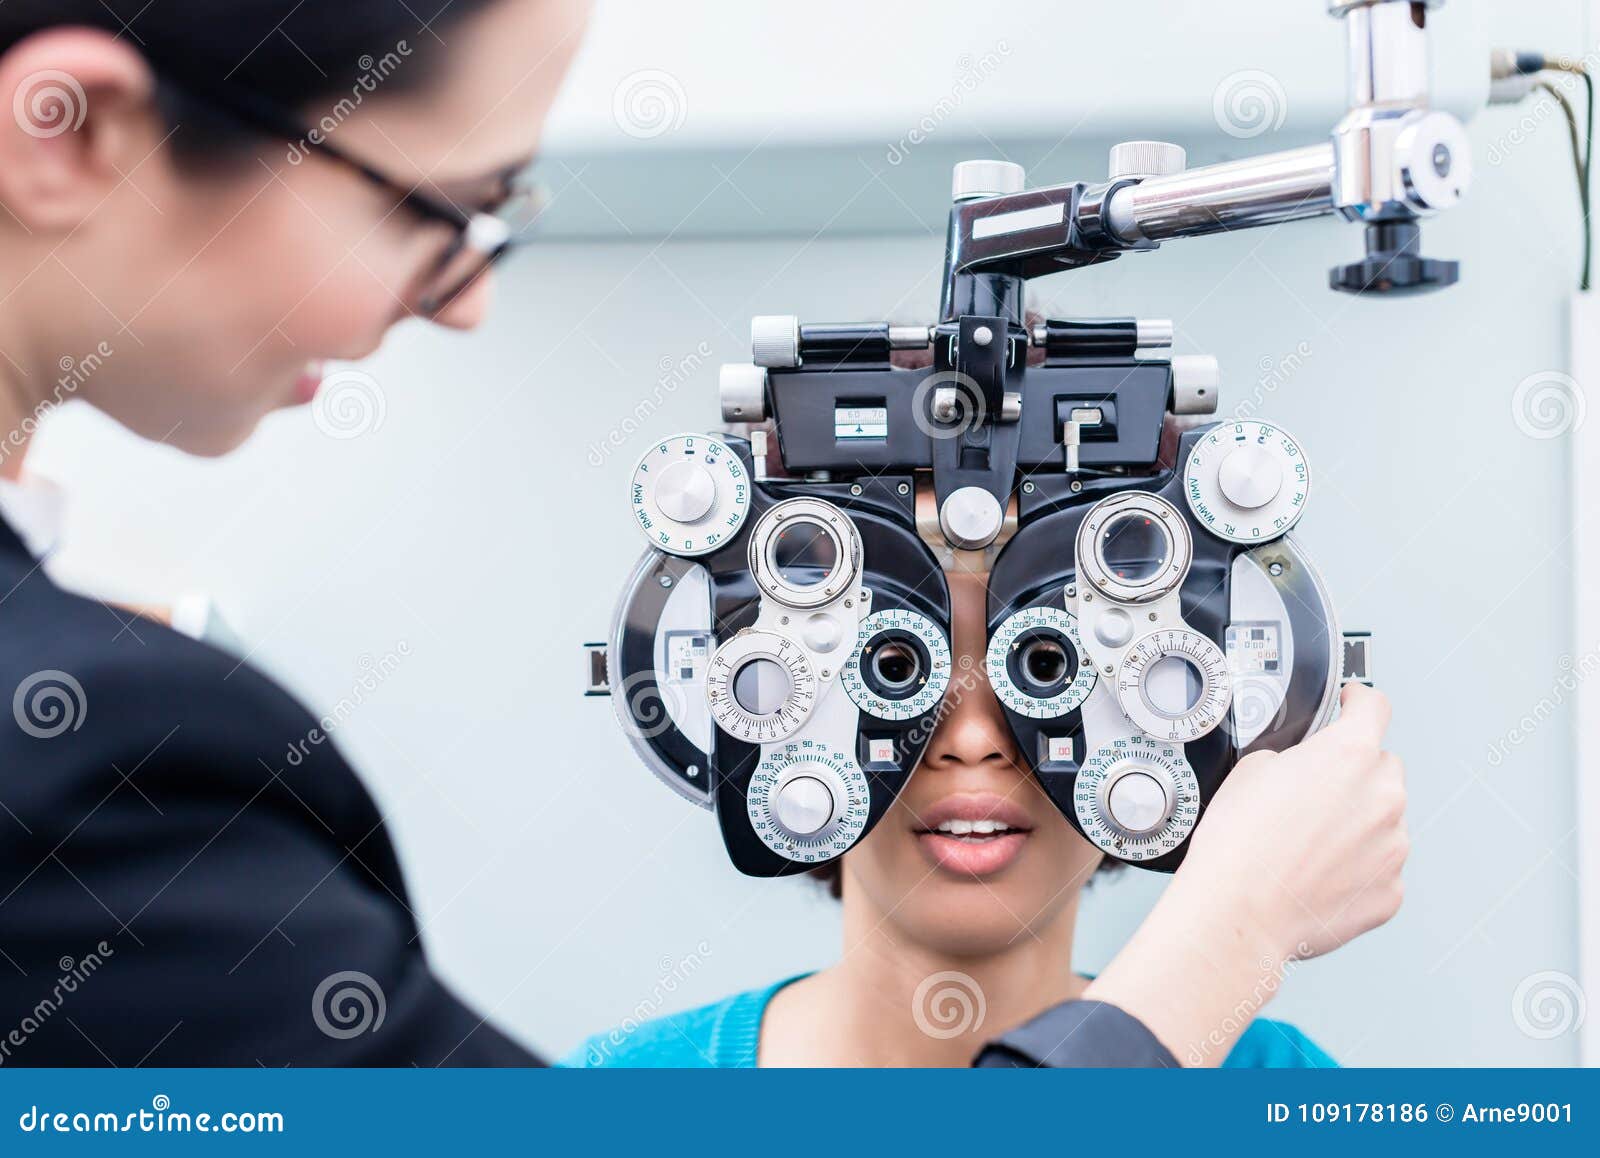 optician and woman at eye examination with phoropter